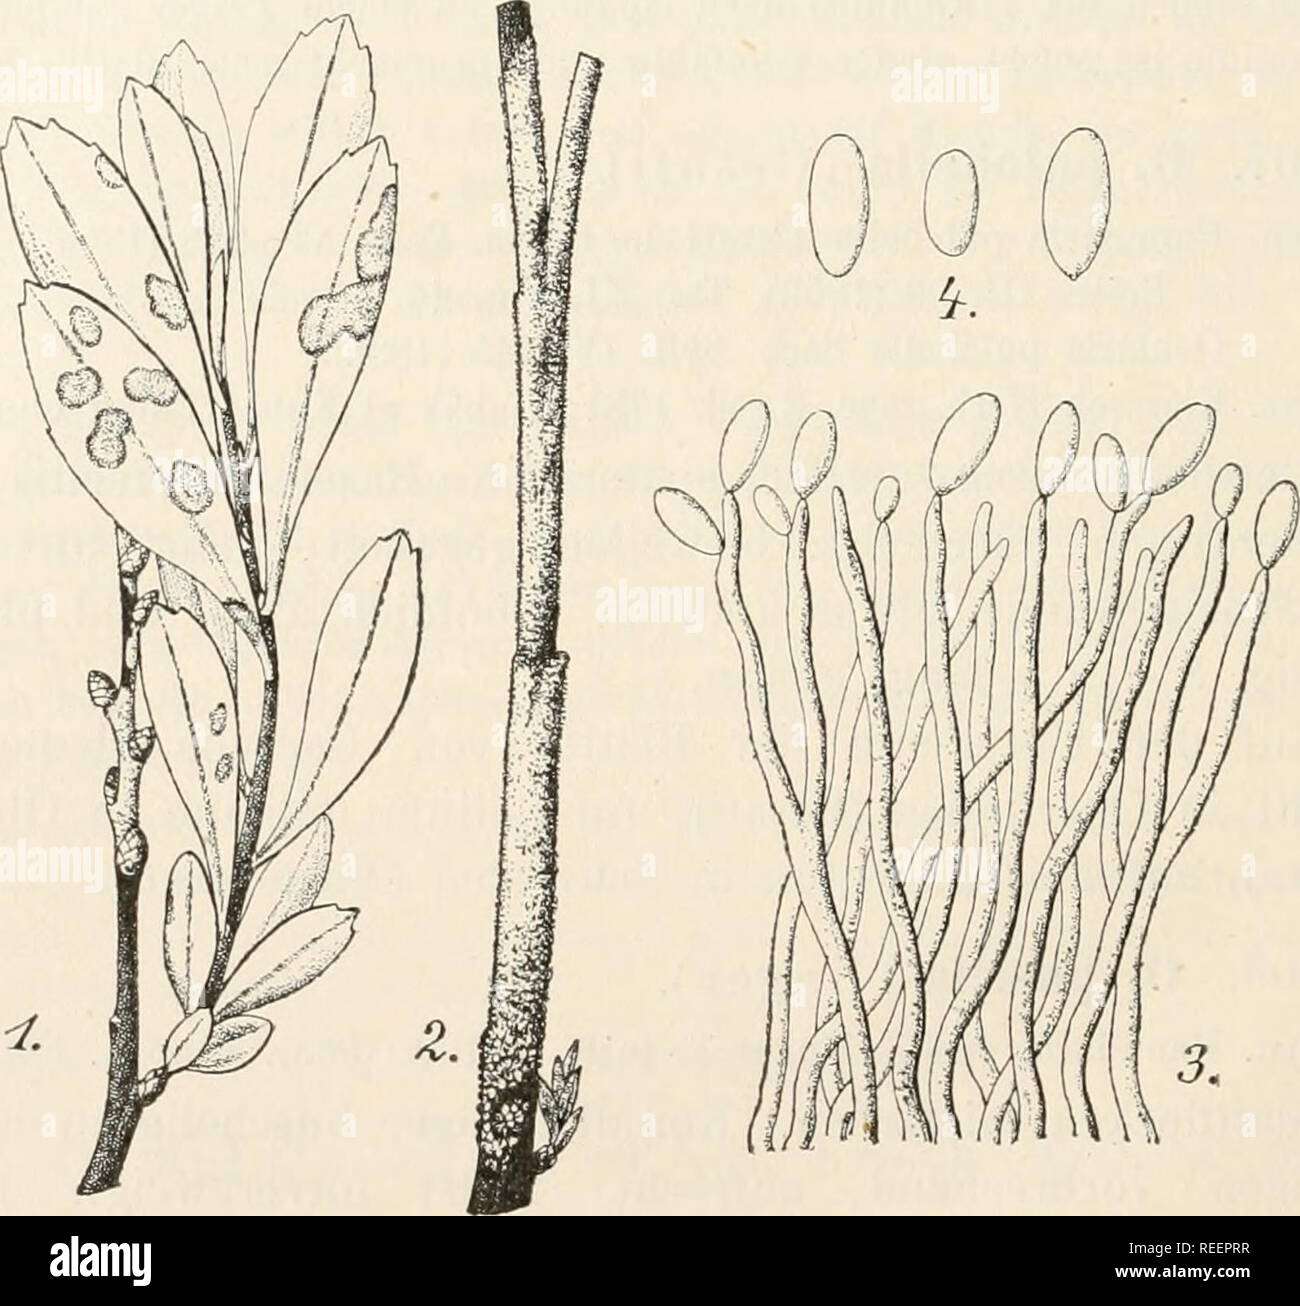 . Dr. L. Rabenhorst's Kryptogamen-Flora von Deutschland, Oesterreich und der Schweiz. Cryptogams -- Germany; Cryptogams -- Austria; Cryptogams -- Switzerland. 236 Syn. Ovularia inyricae Peck rascr. cfr. Vestergren l. c, Sphaeria (?) Sommeri Eichelbaum in Bot. Ceutralbl. XXIX, 378 (1887). Ovularia Sommeri Sacc. in Grevillea XXI, 68 (1893), Taf. 184, Fig. 14; Svll. XI, 599. Exs. Vestergren Microin. rar. sei 245, 546; v. Thümen Herb. myc. oec. 481; V, Thümen Myc. univ. 1175; Eabenh. Fungi eur. 2267; Eoumeguere Fungi gall. 3686. Aeste auf weite Strecken rundum mit einer weissen, oft leicht rötlich Stock Photo